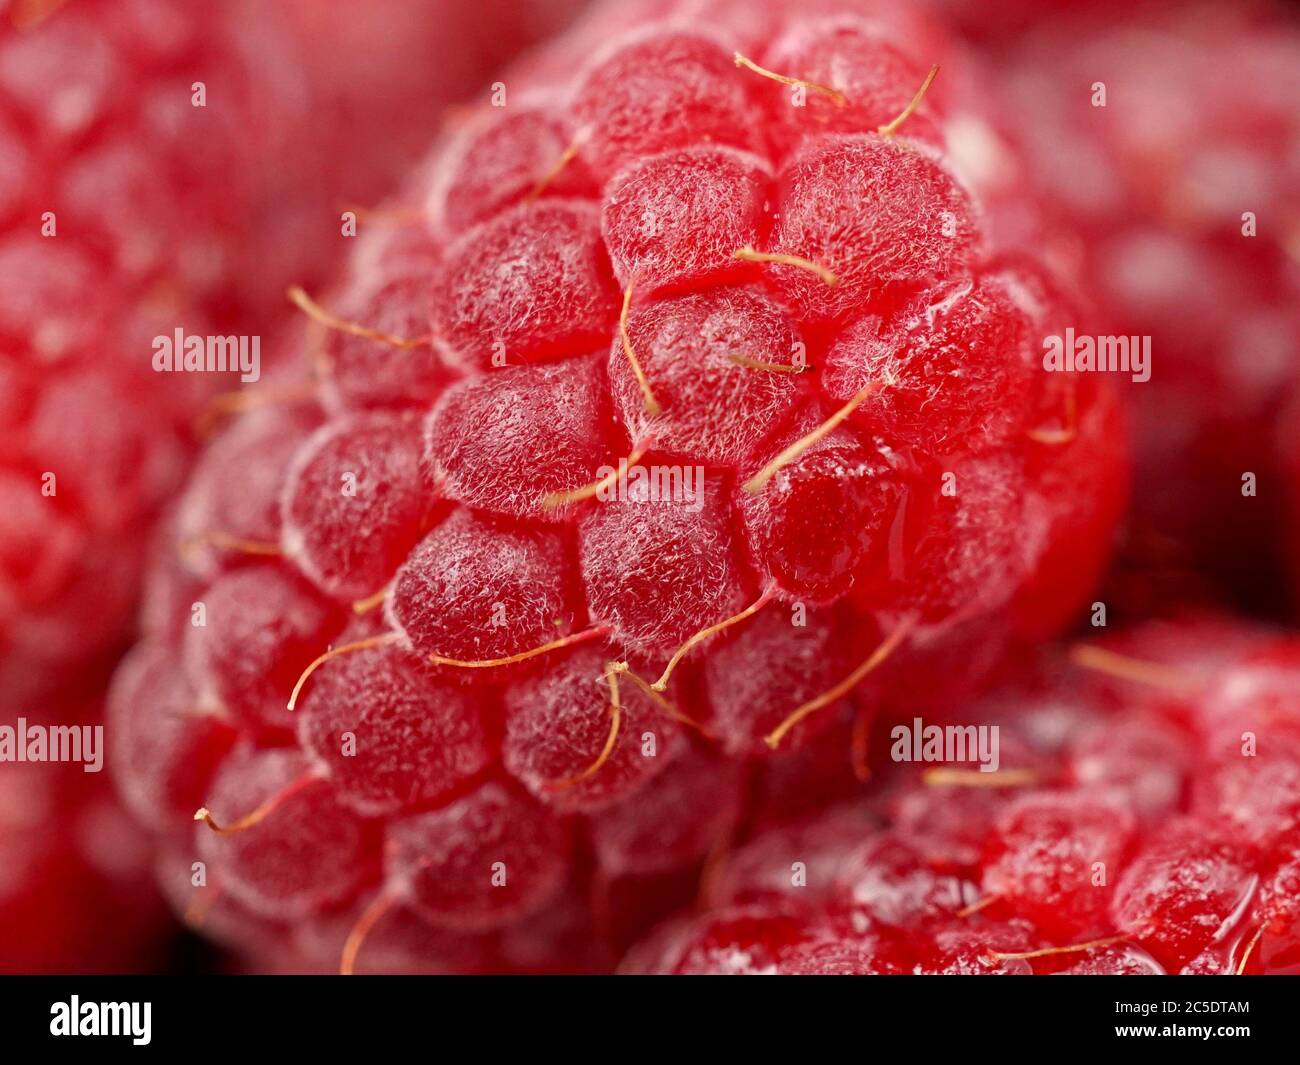 Macro photo of fresh loganberries (Rubus loganobaccus) Stock Photo